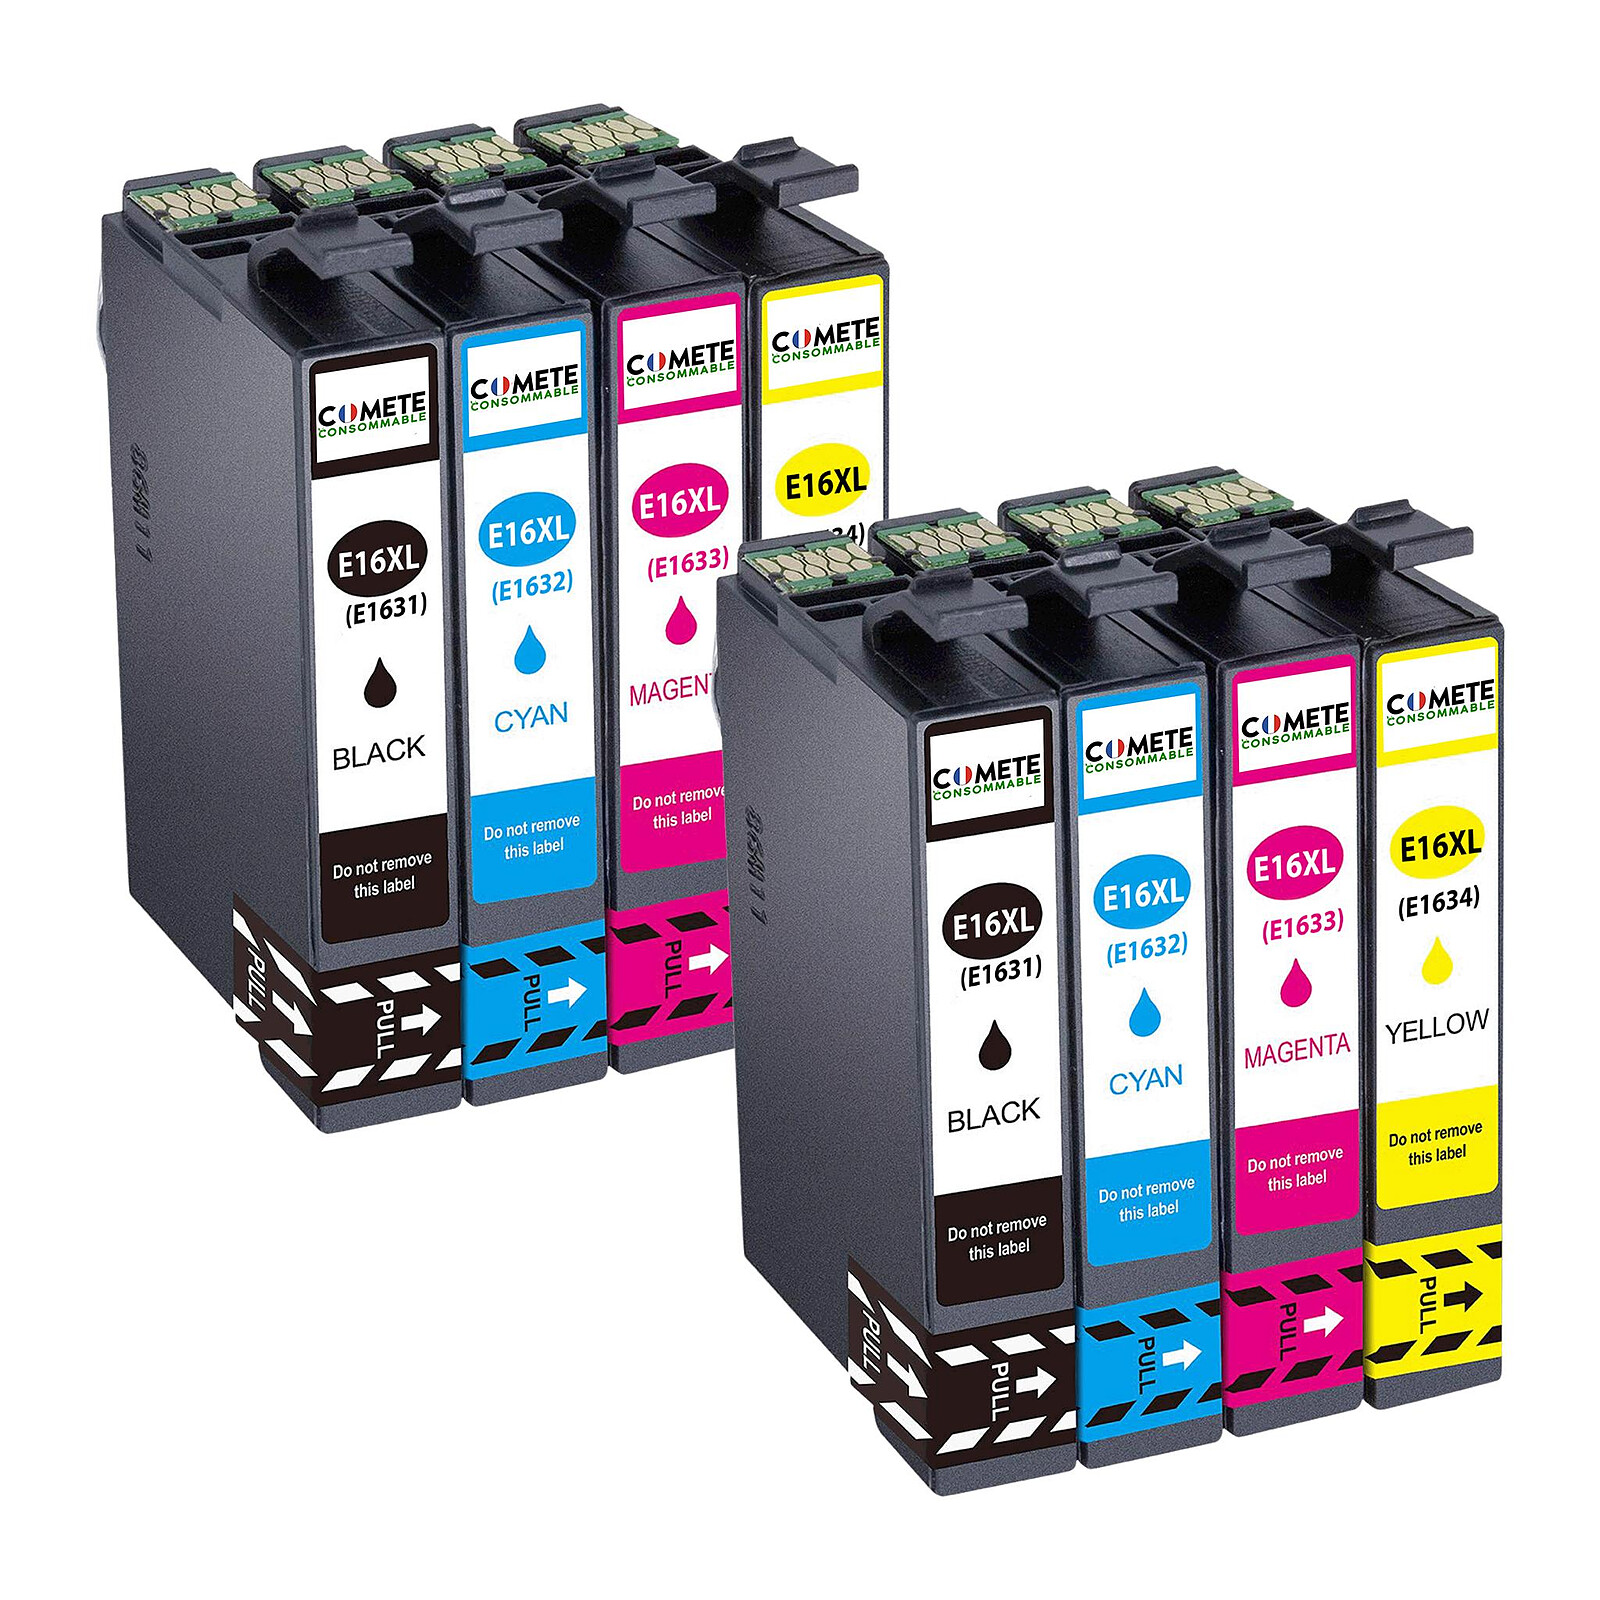 COMETE - 503XL - 4 Cartouches d'encre Compatibles avec Epson 503 XL - Noir  et Couleur - Marque française - Cartouche imprimante - LDLC